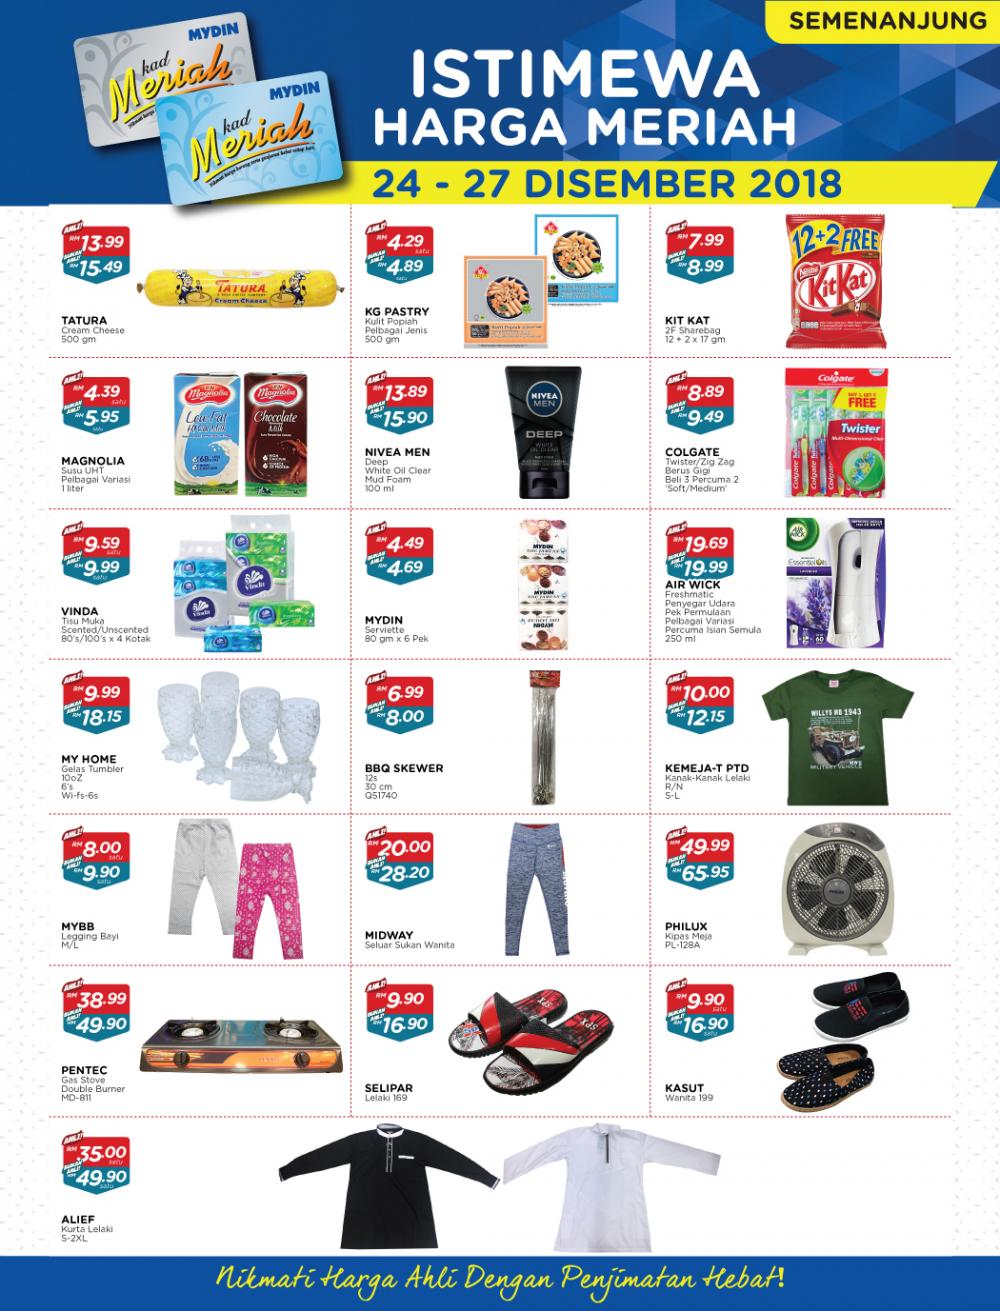 MYDIN Meriah Special Promotion (24 December 2018 - 27 December 2018)